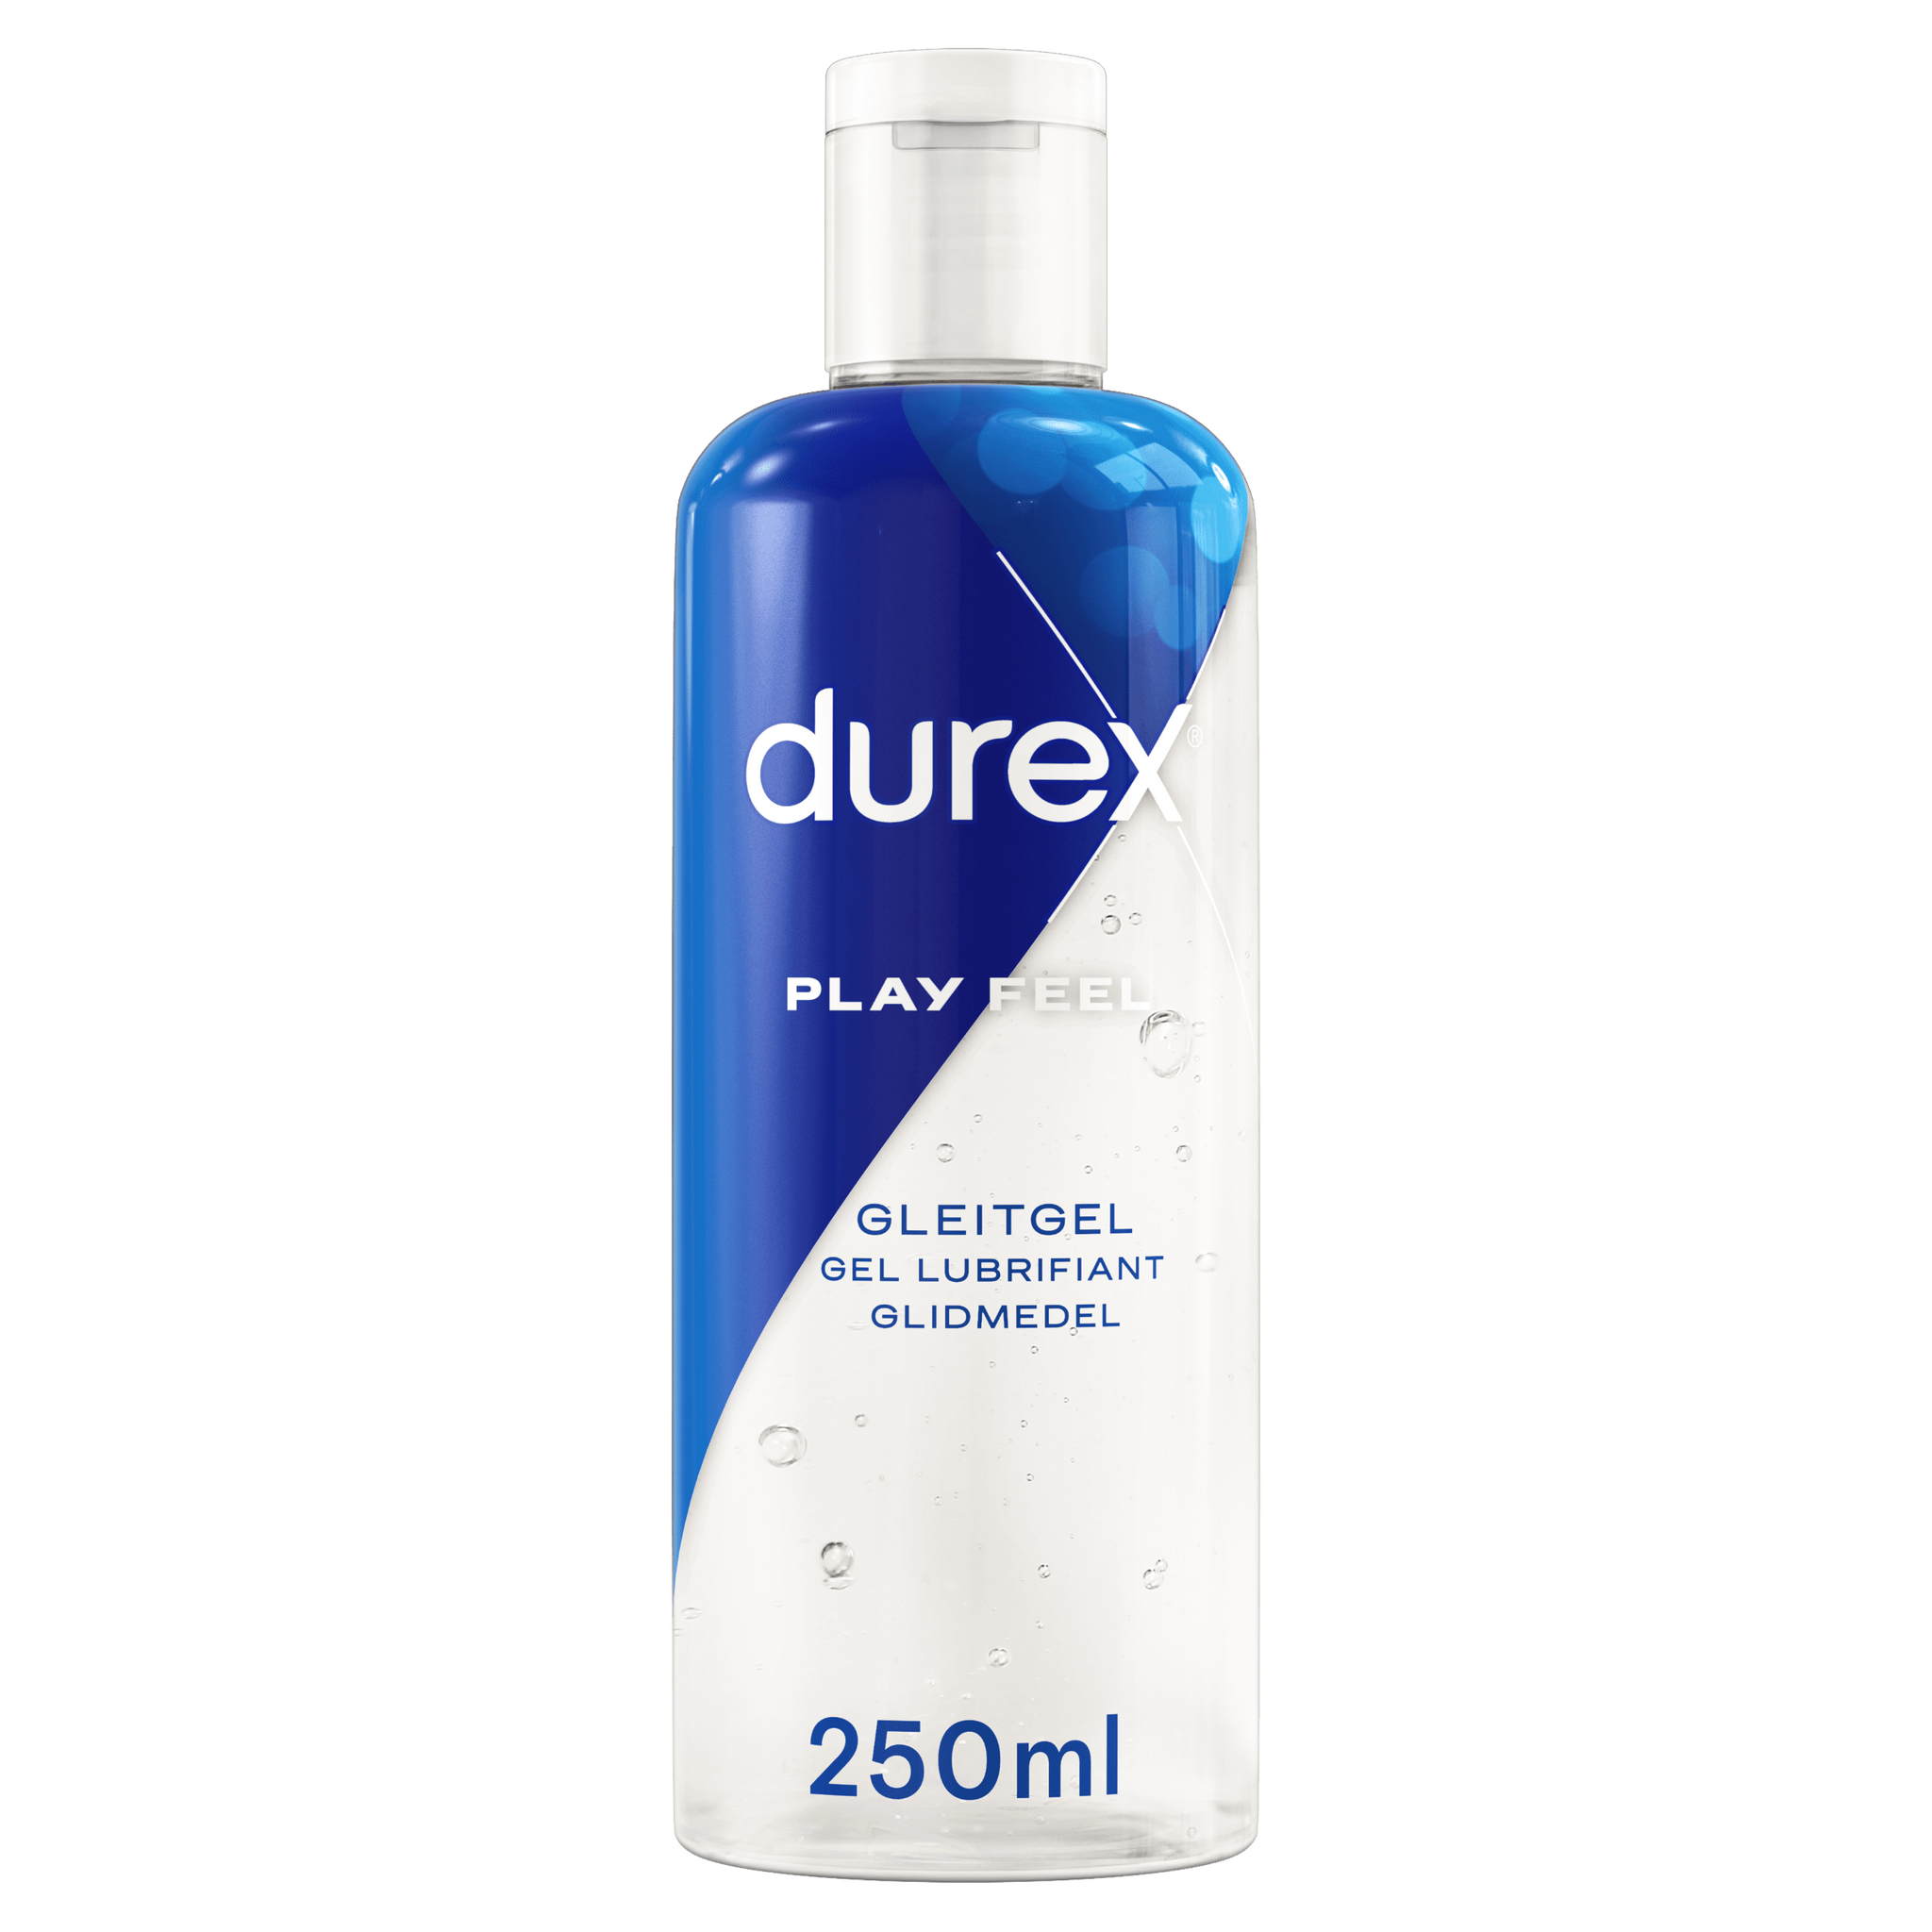 Durex DE Play Feel 250 ml